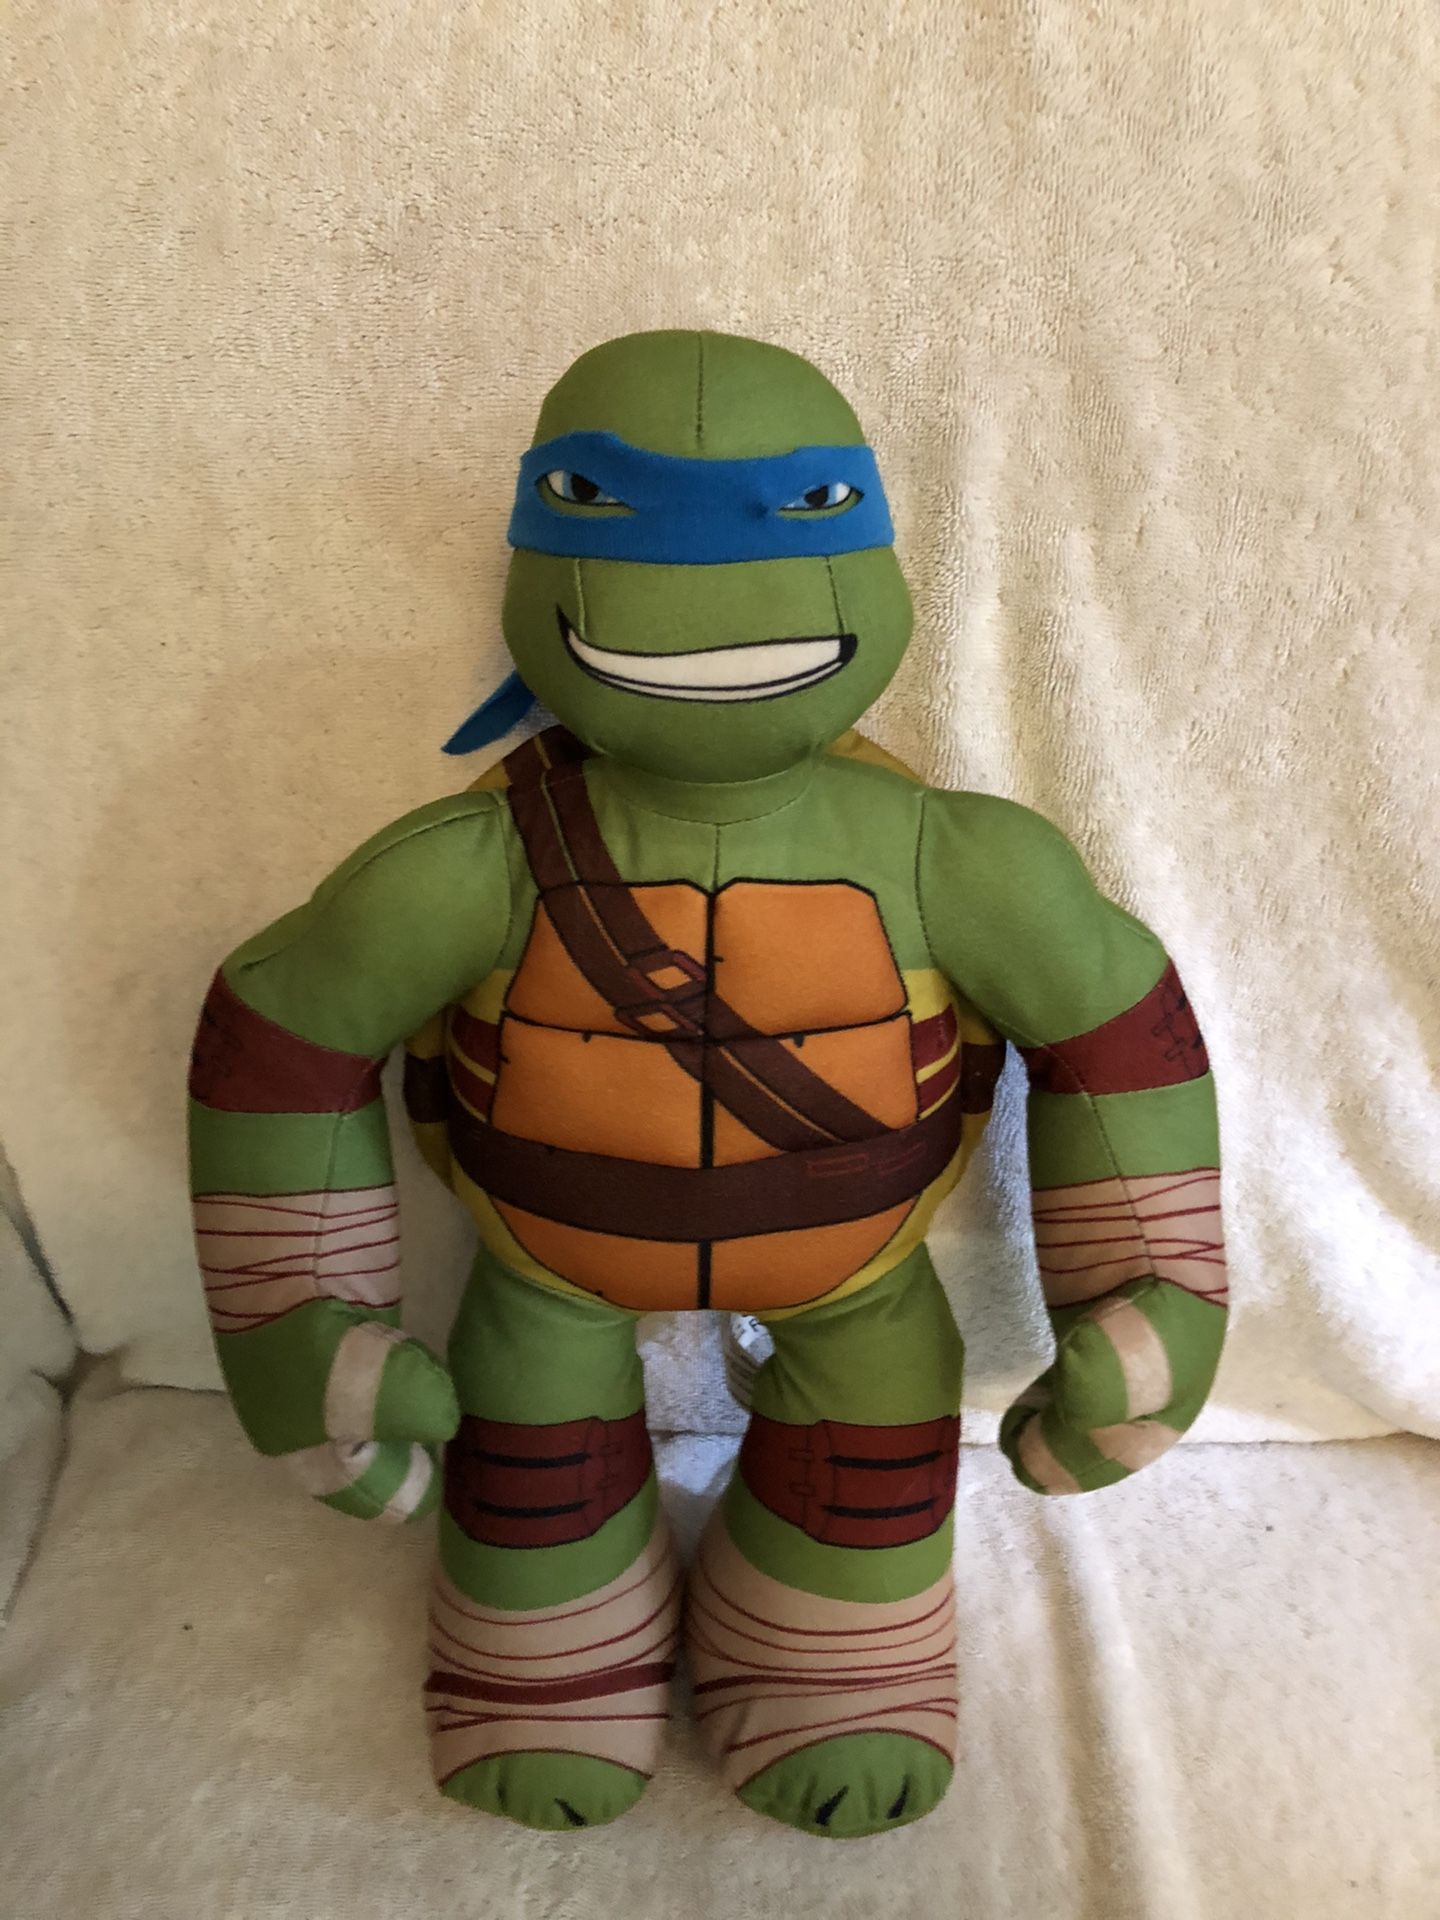 18" Teenage Mutant Ninja Turtle Leonardo Plush Stuffed Toy (Viacom Brand)